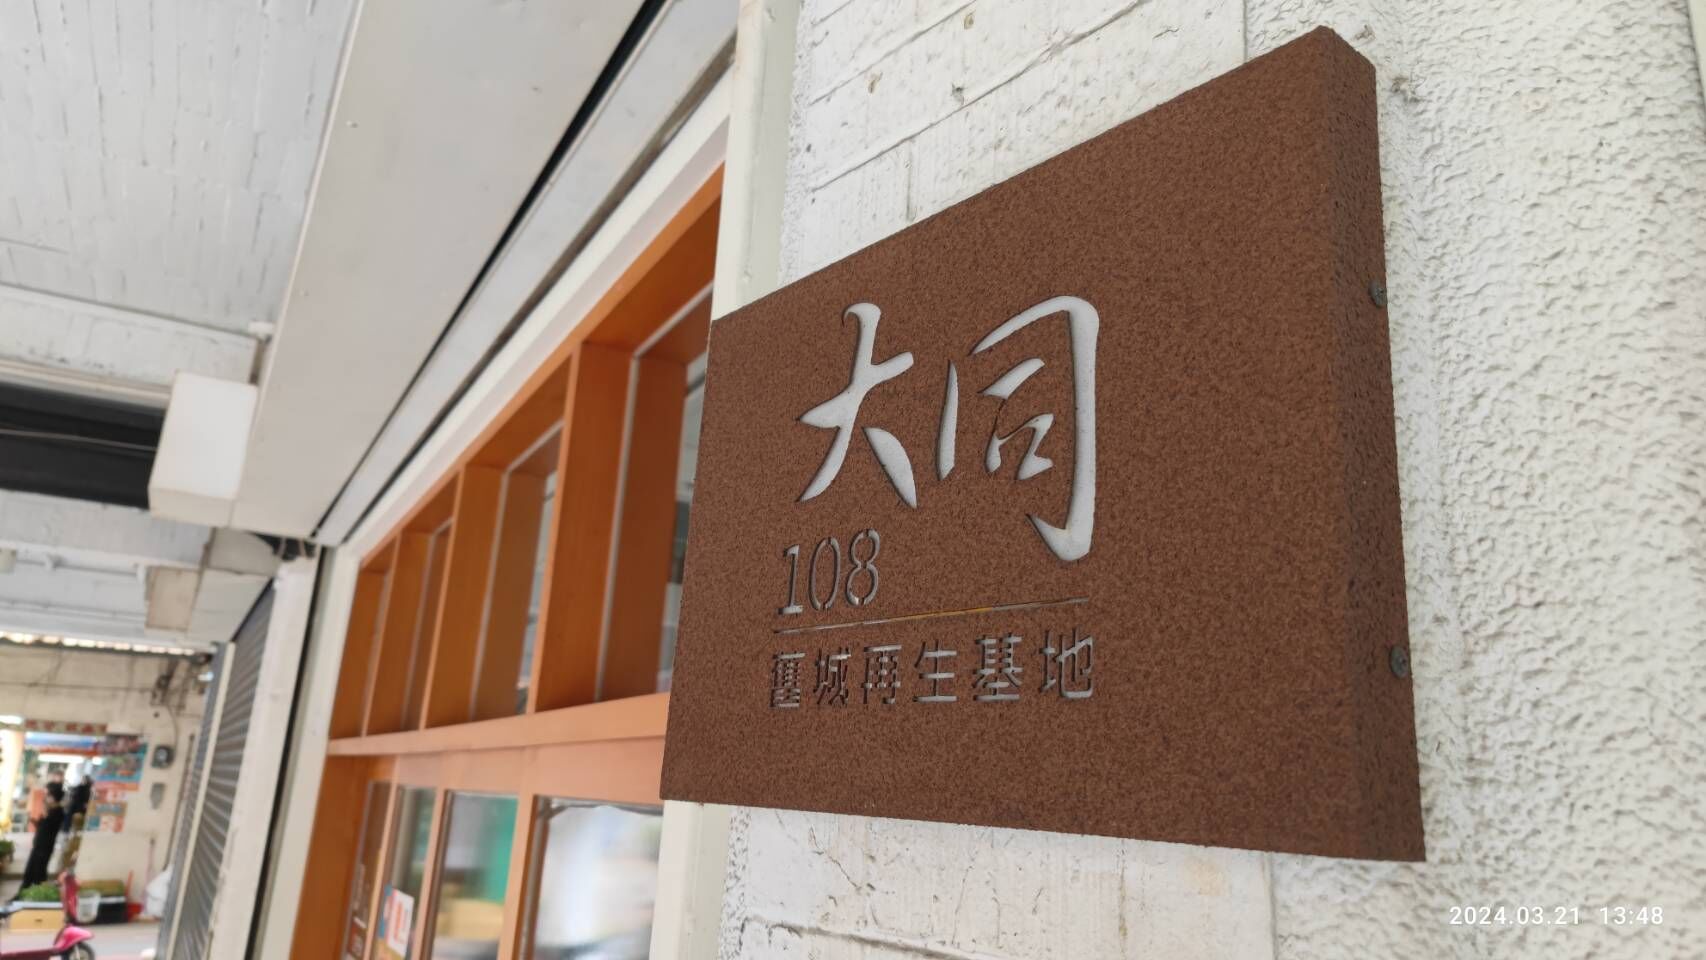 新竹市大同108舊城再生基地將轉型為「新竹市住宅中心辦公室」。